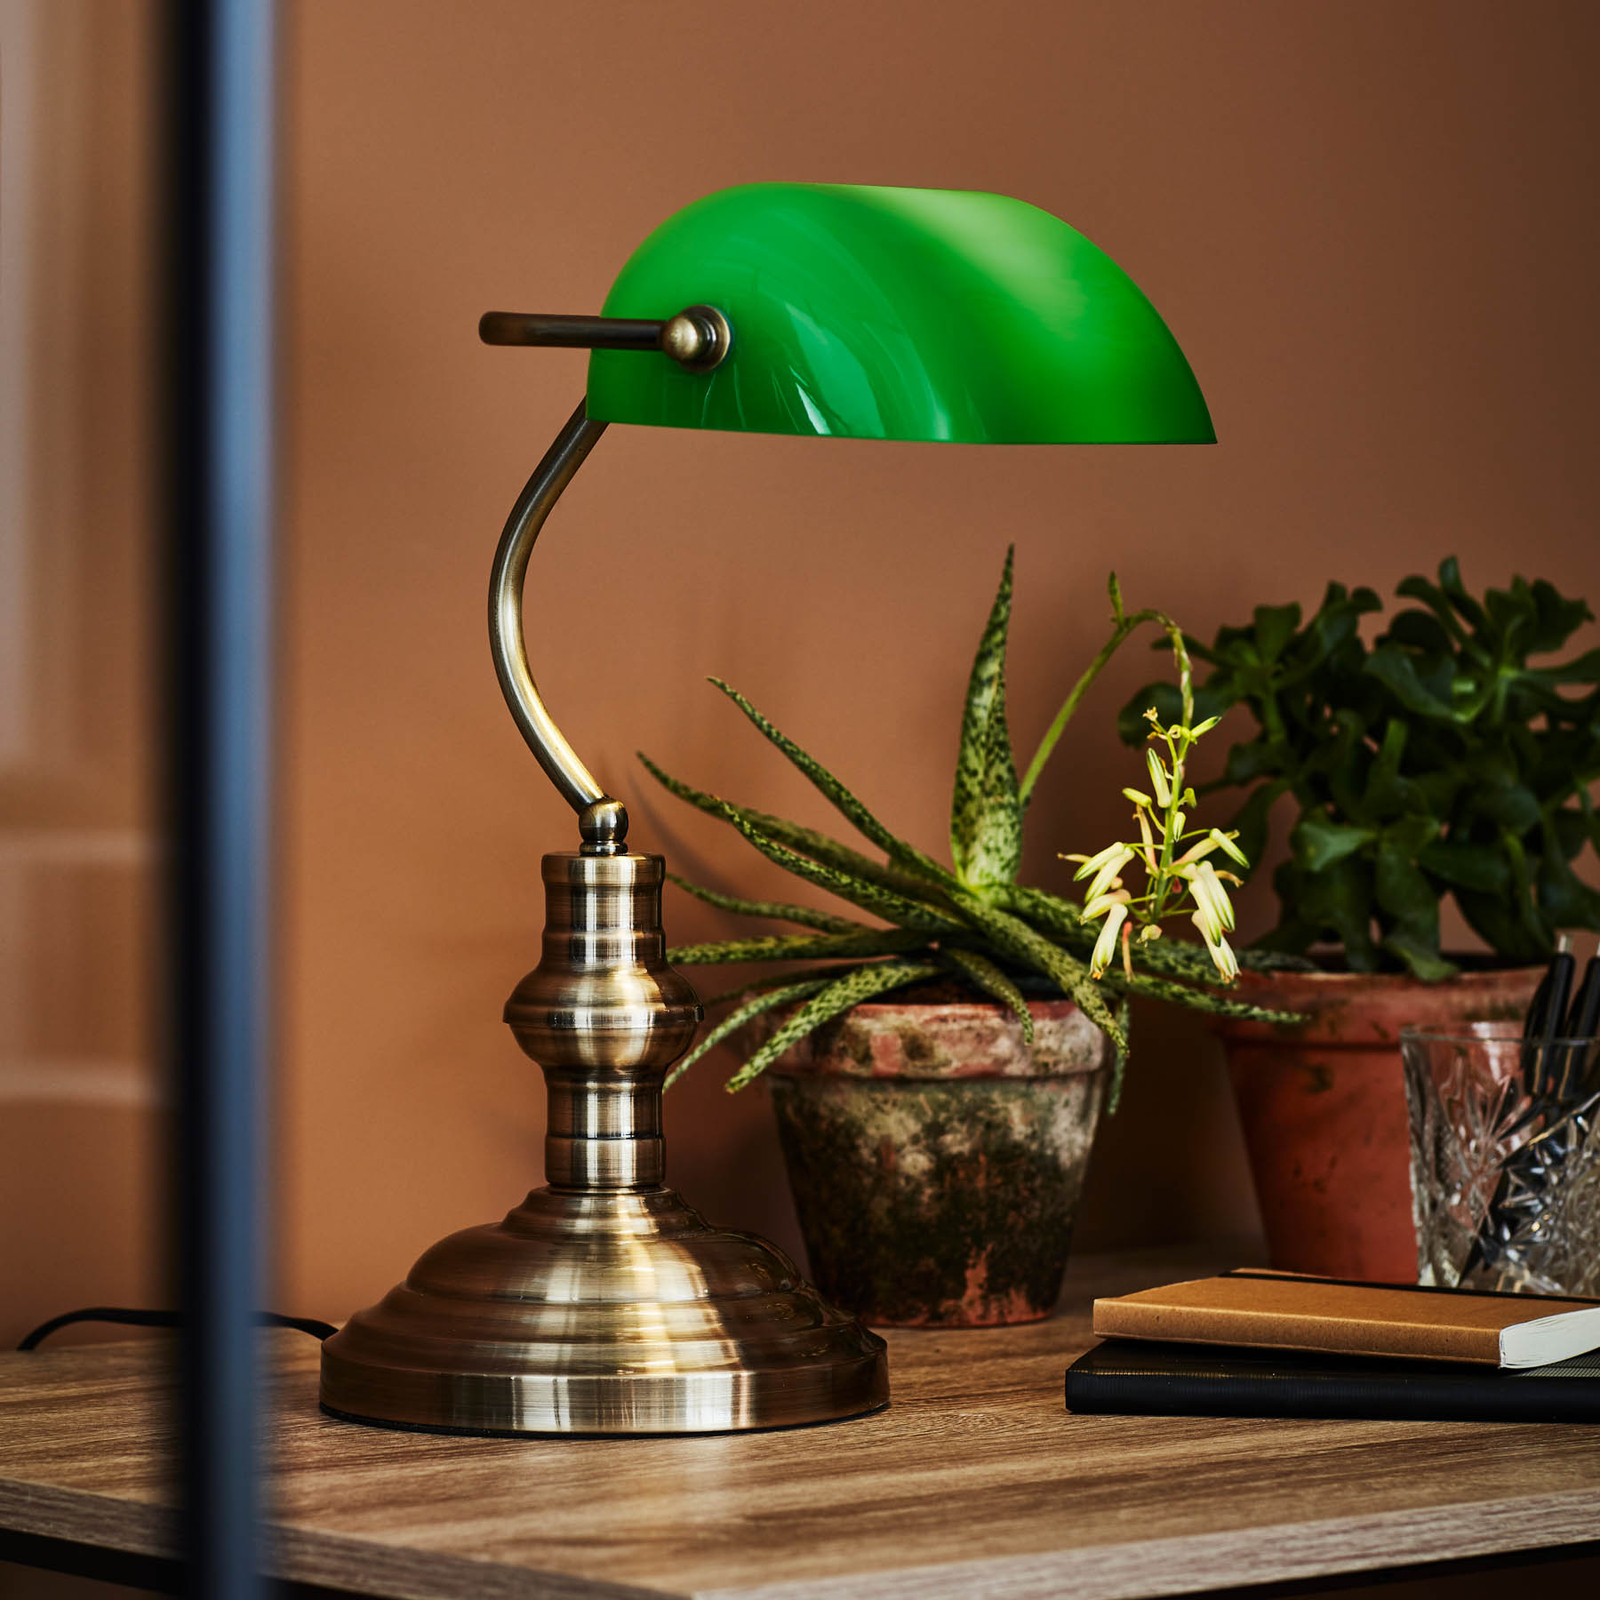 Bankers bordlampe, høyde 25 cm grønn